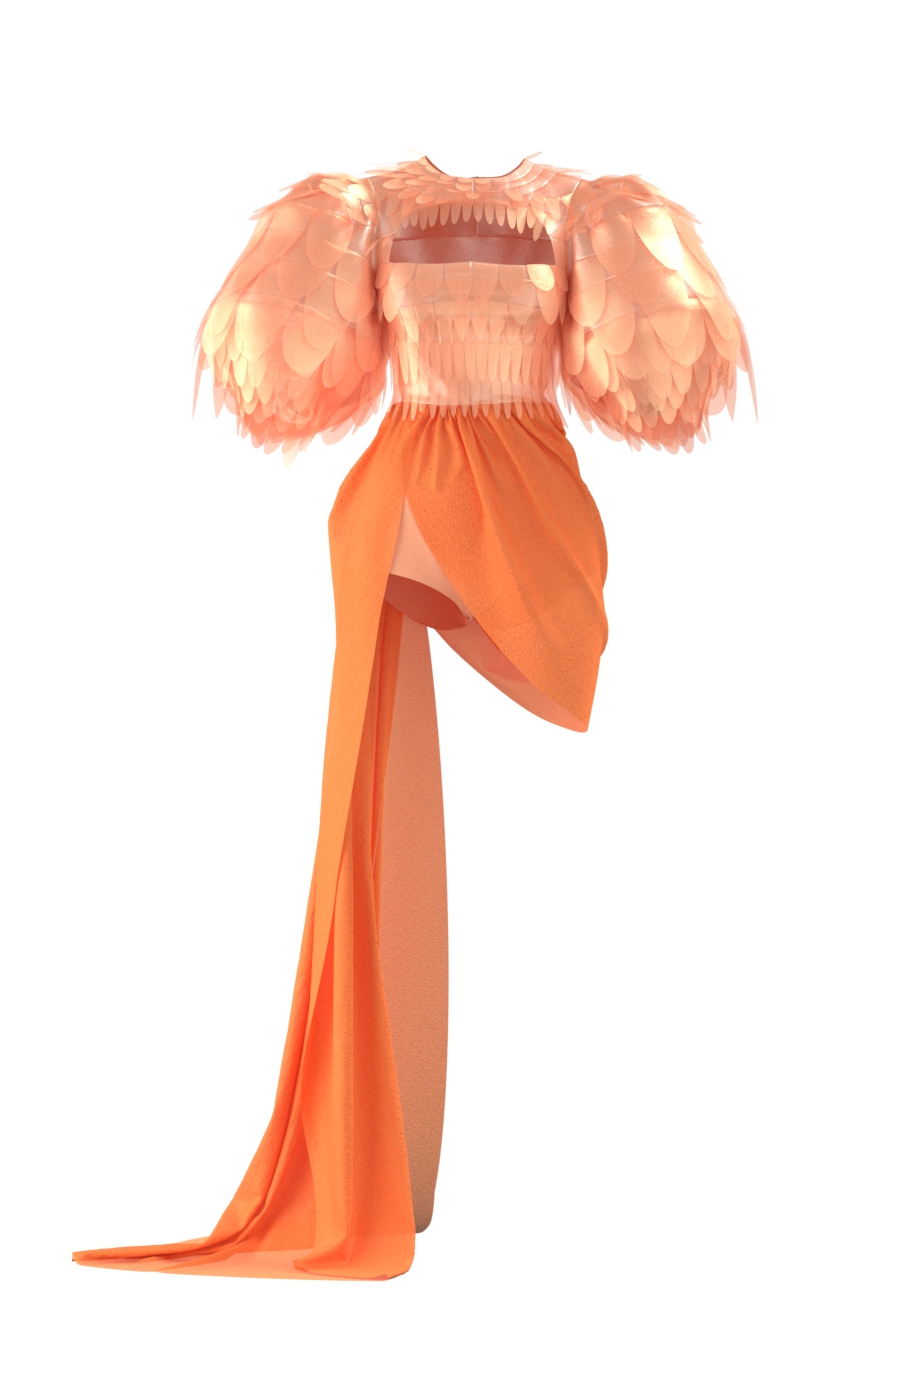 3D-платье Жар Птица